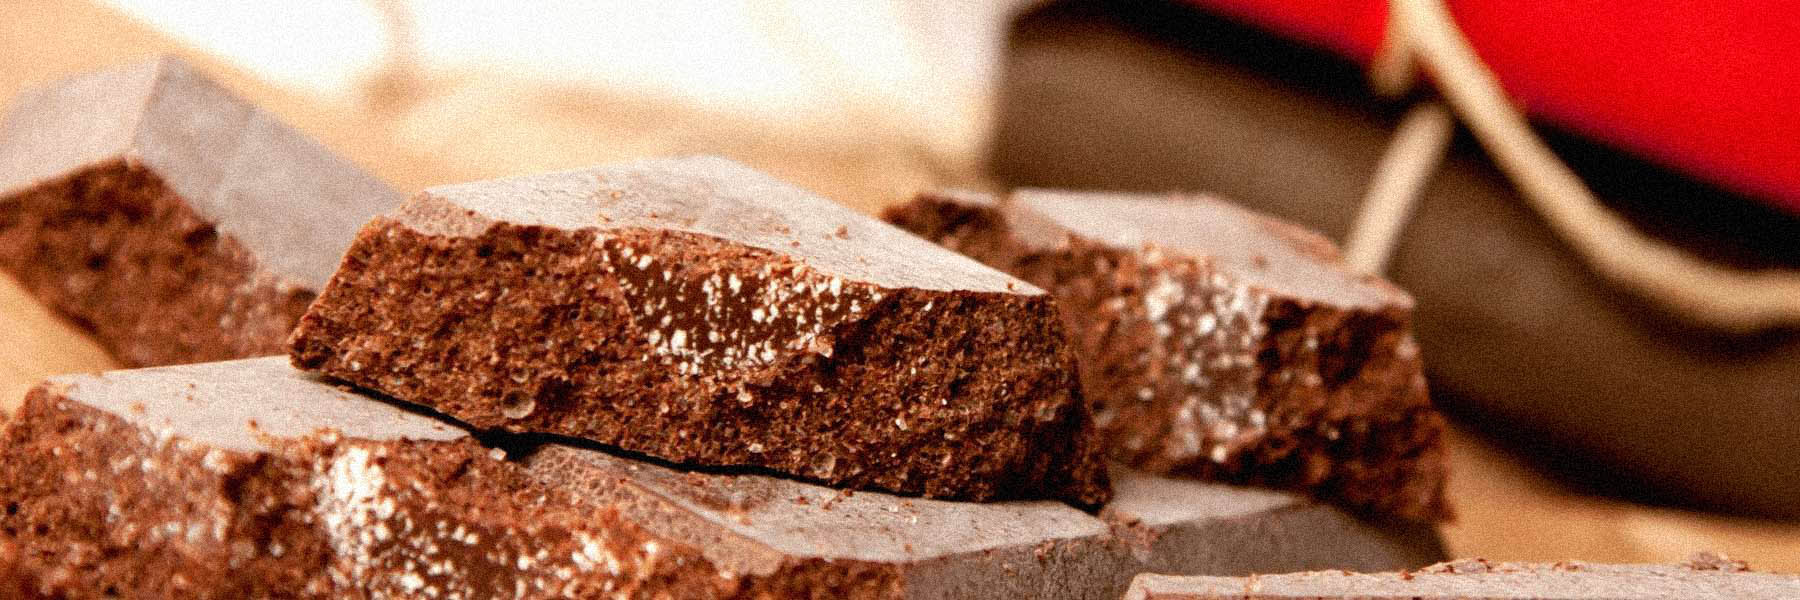 cioccolato di modica, selezioni di cioccolato modicano IGP